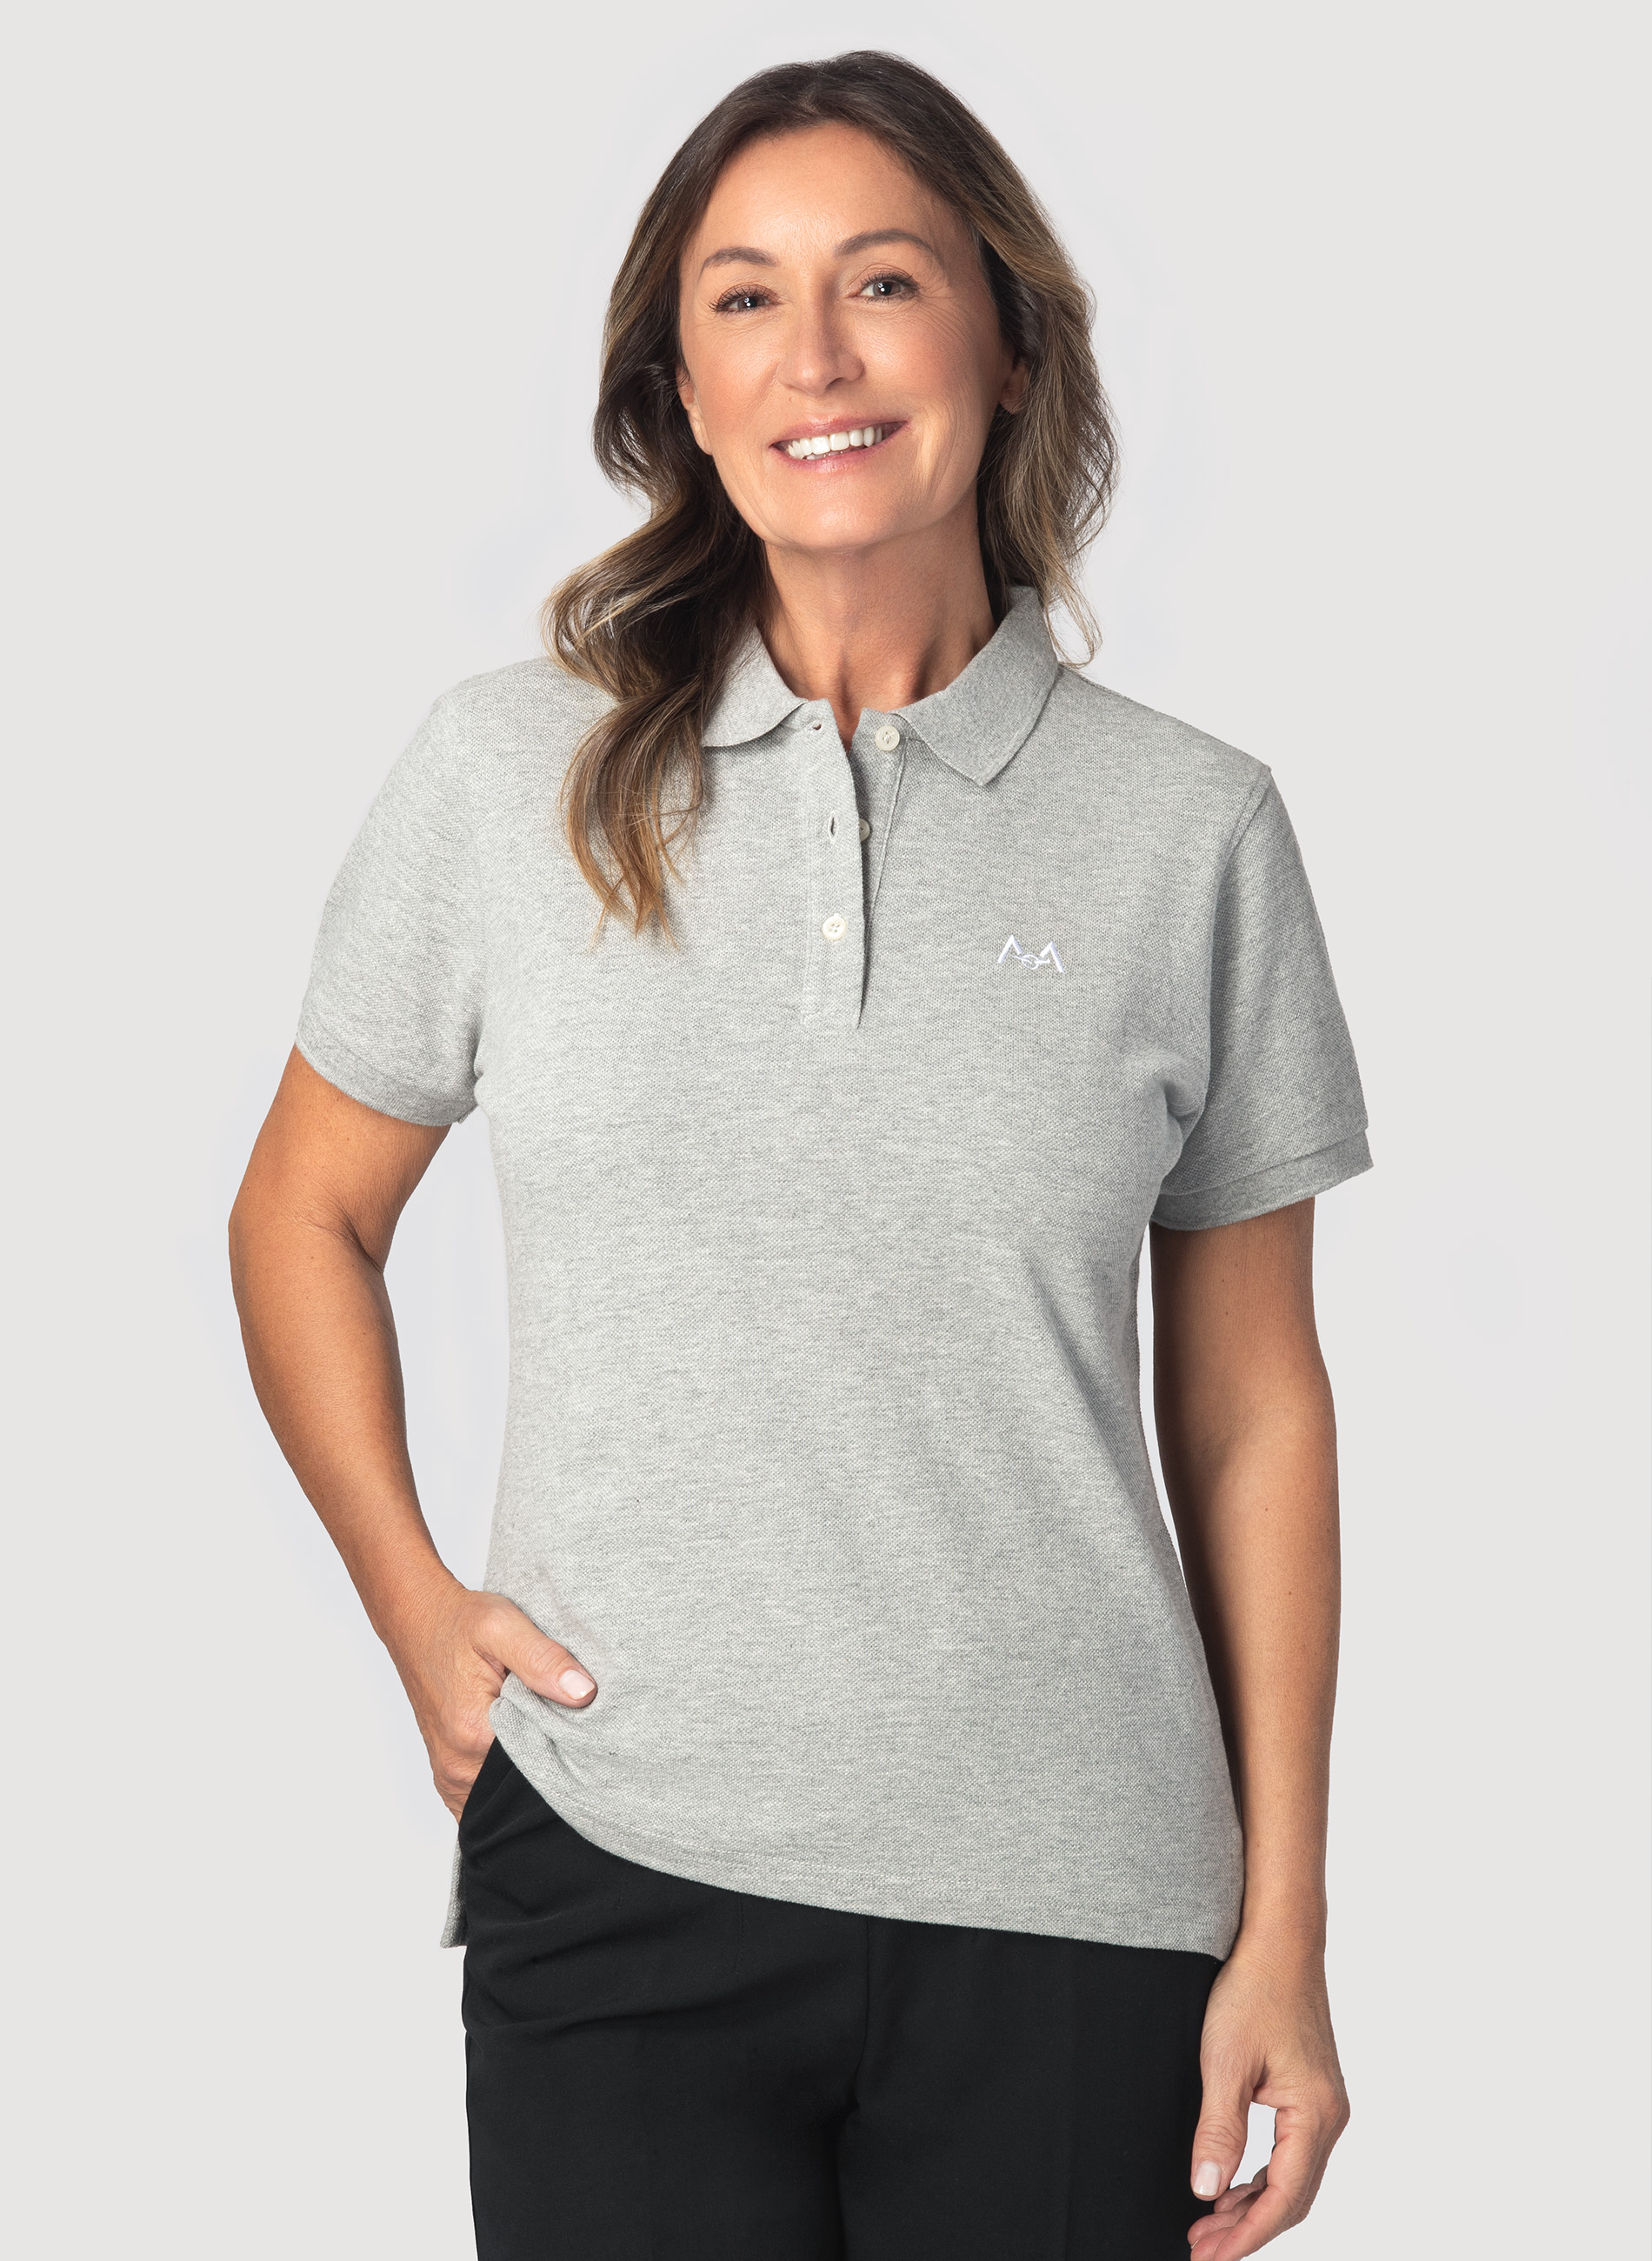 Grey Polo Shirt Women's